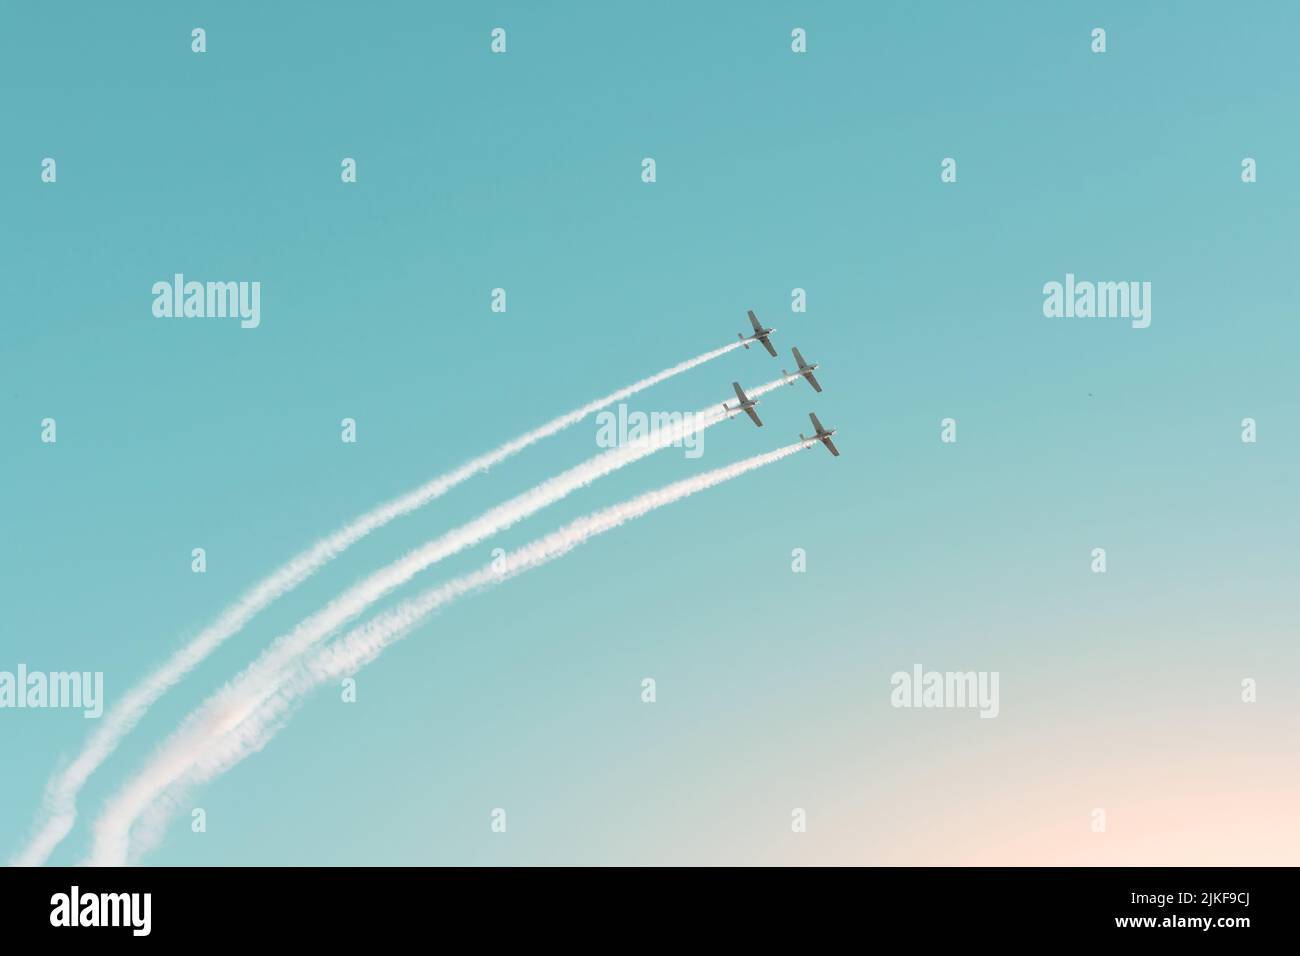 El equipo aerobio vuela suavemente en aviones de motor ligero turbopropulsor en el aire Foto de stock